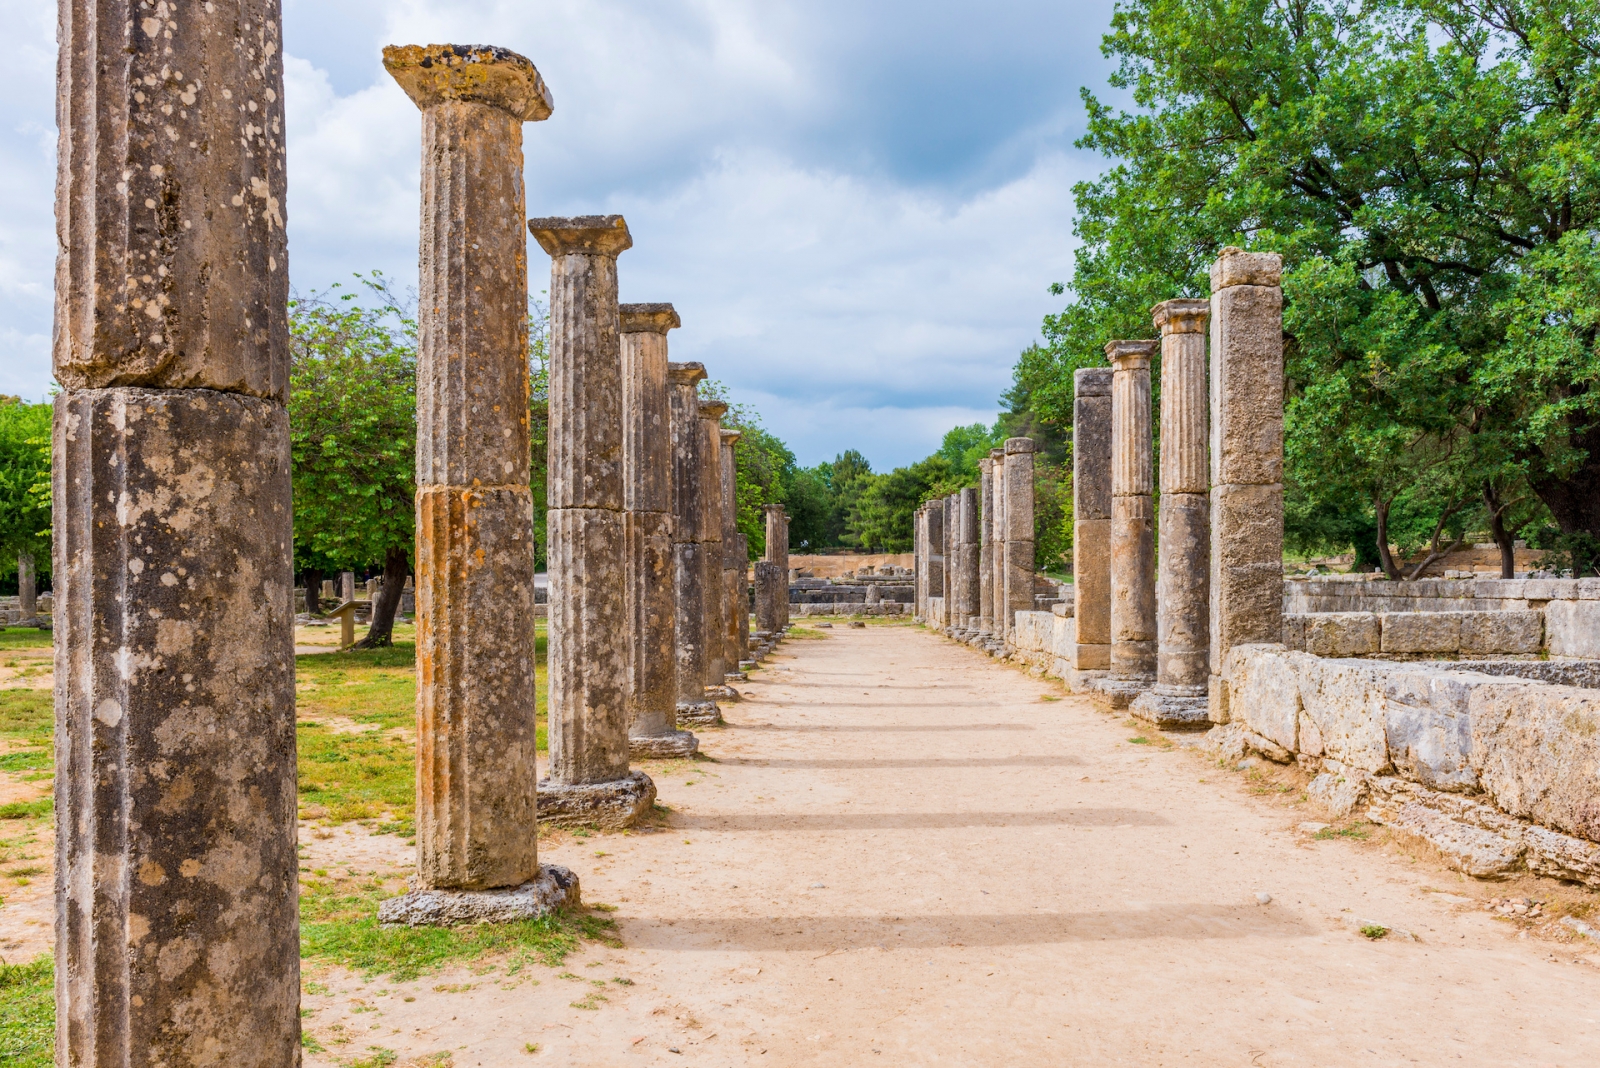 Палаистра (площадки для борьбы), руины древнего города Олимпия, Греция